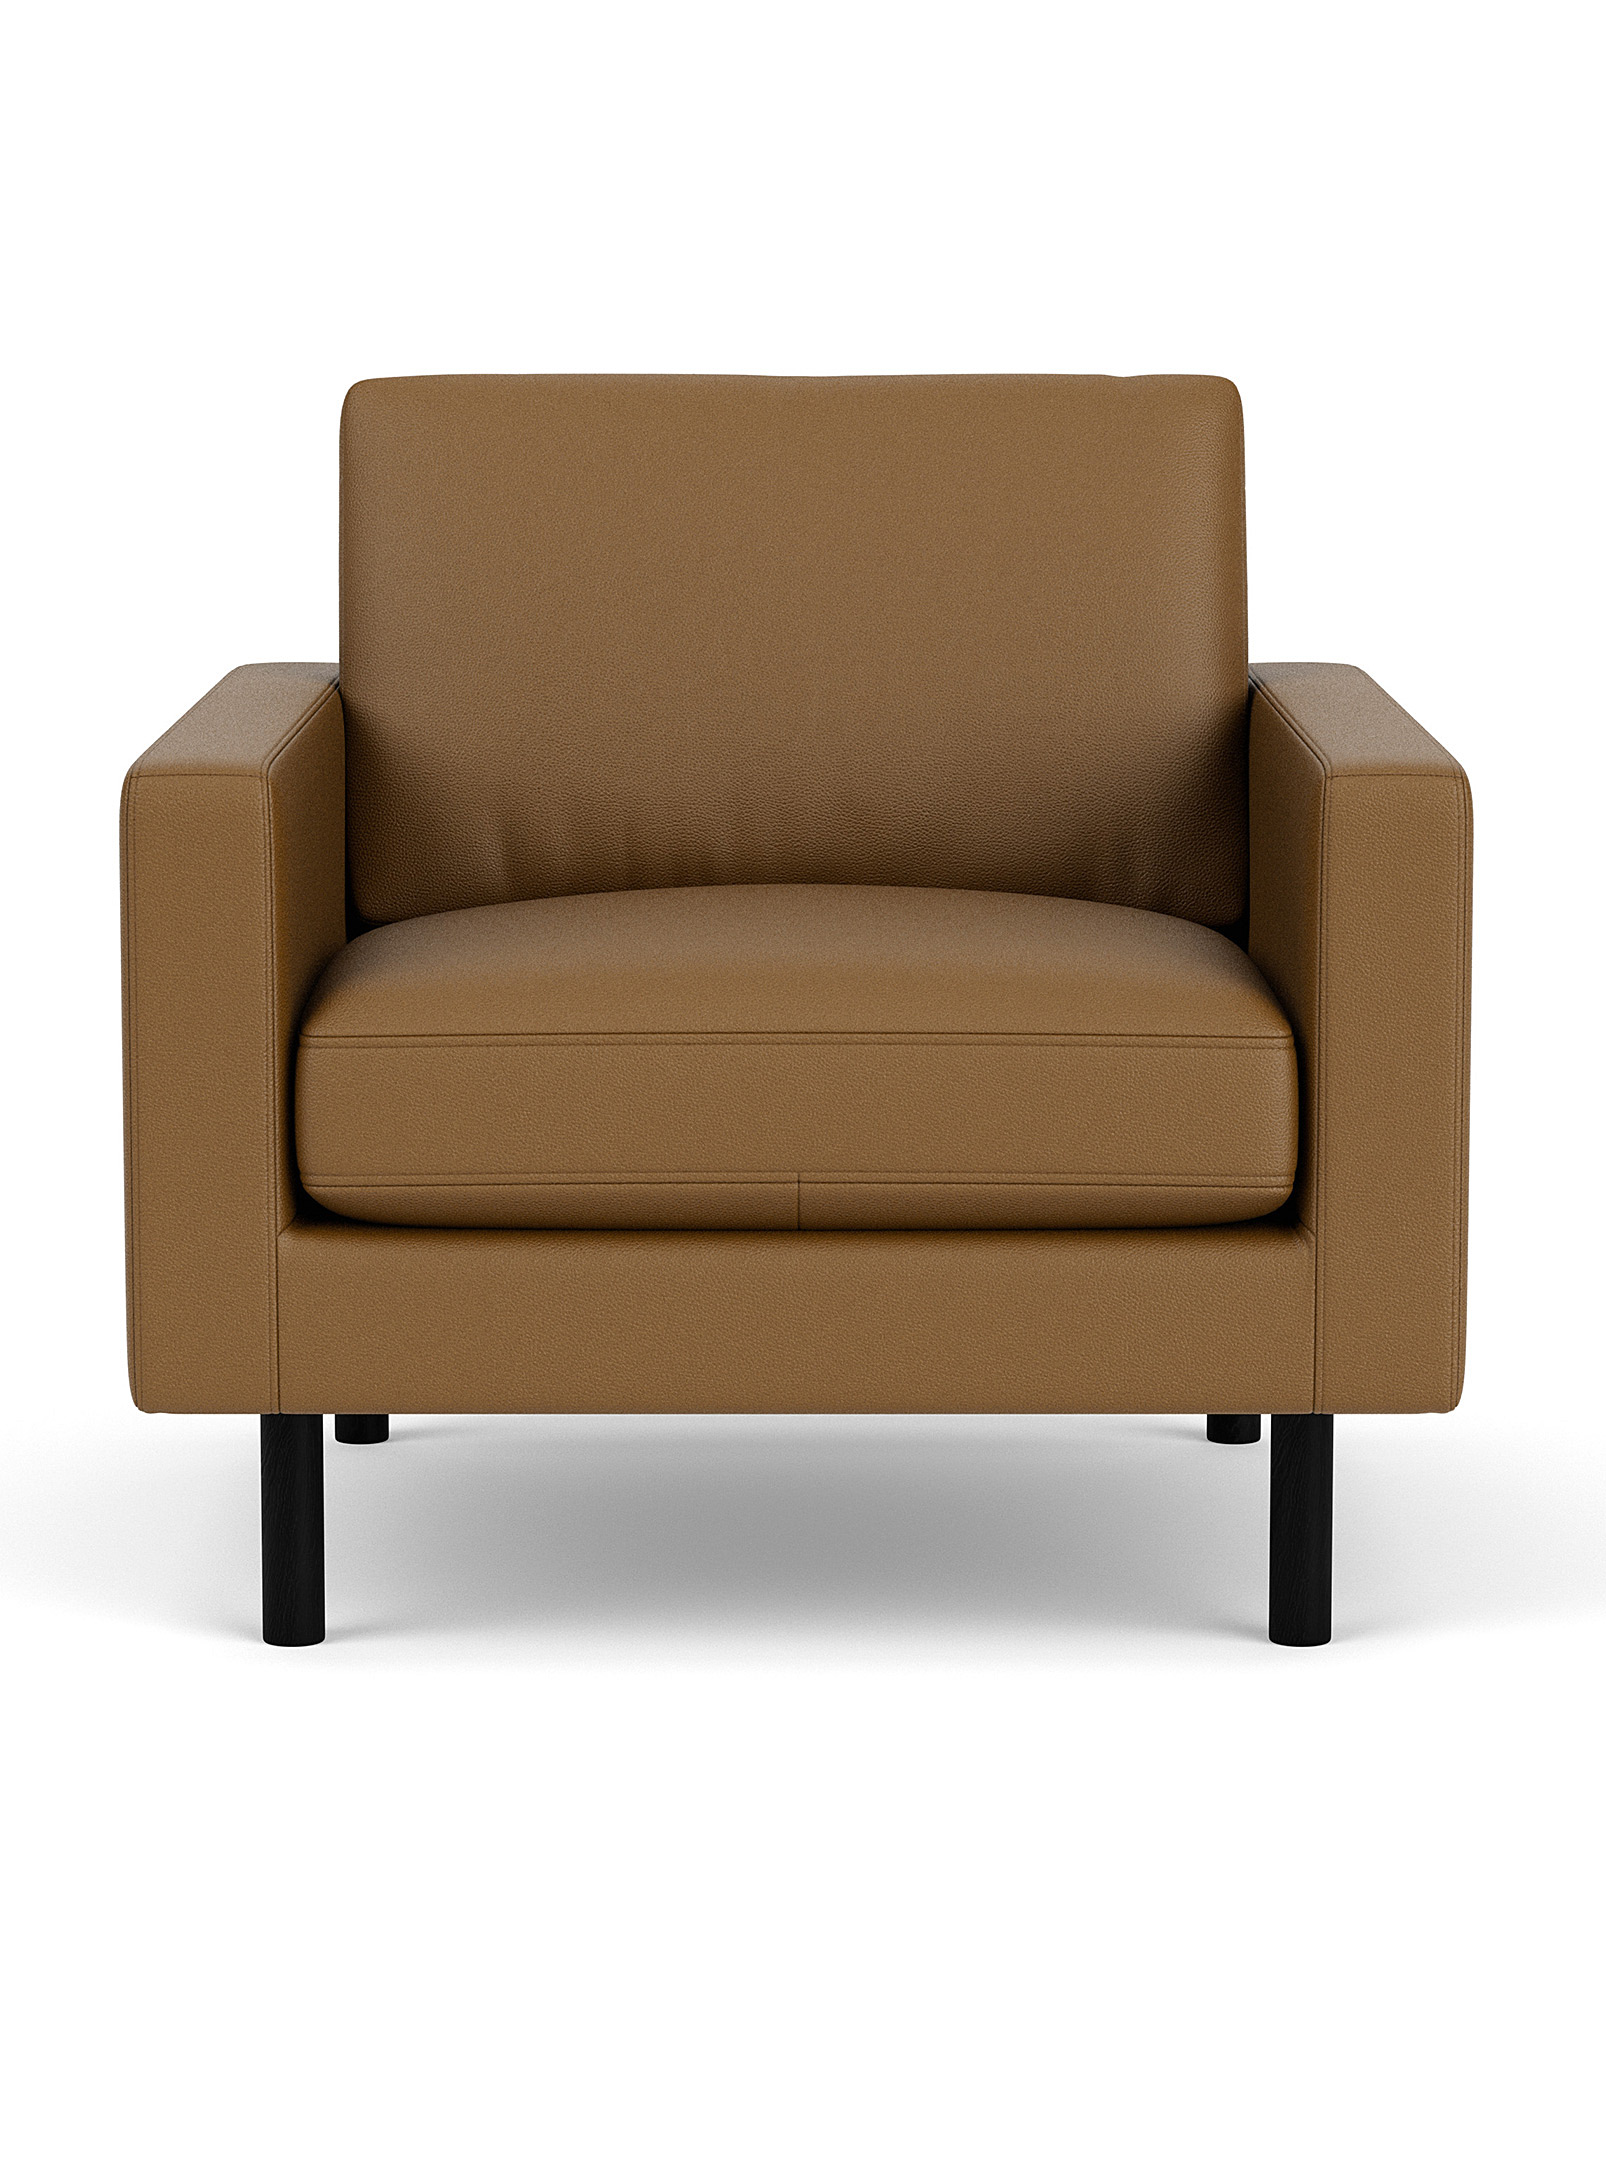 EQ3 - Le fauteuil carré surpiqué en cuir